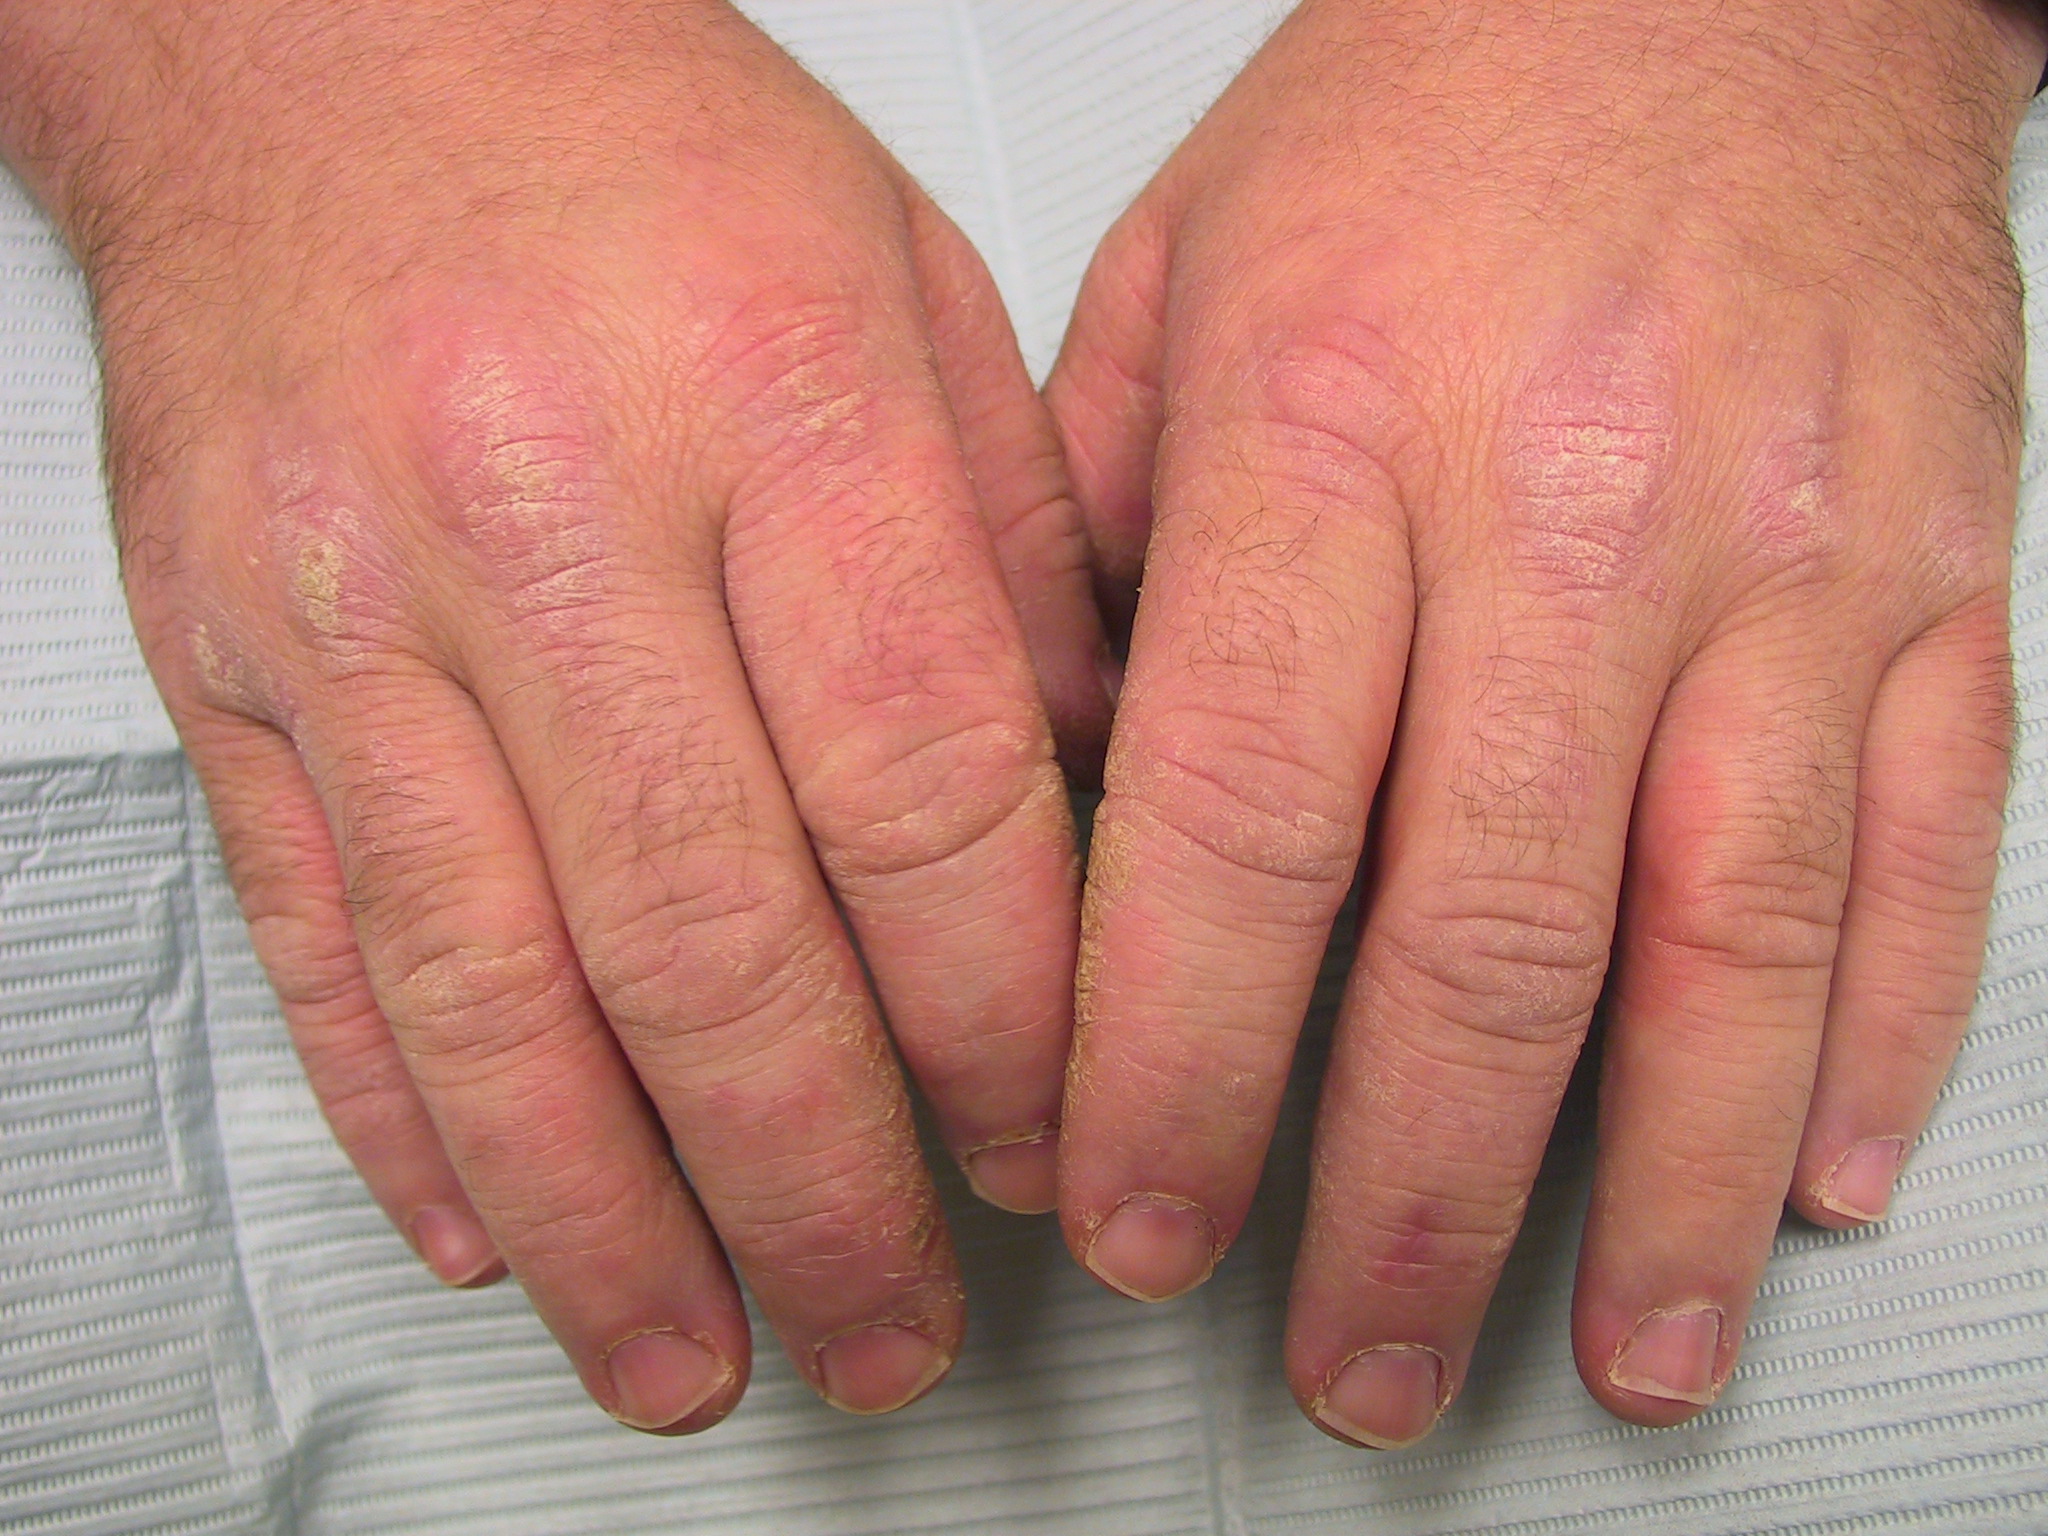 dureri articulare Sindromul Reiter osteoartroza istoricului medical al articulației șoldului